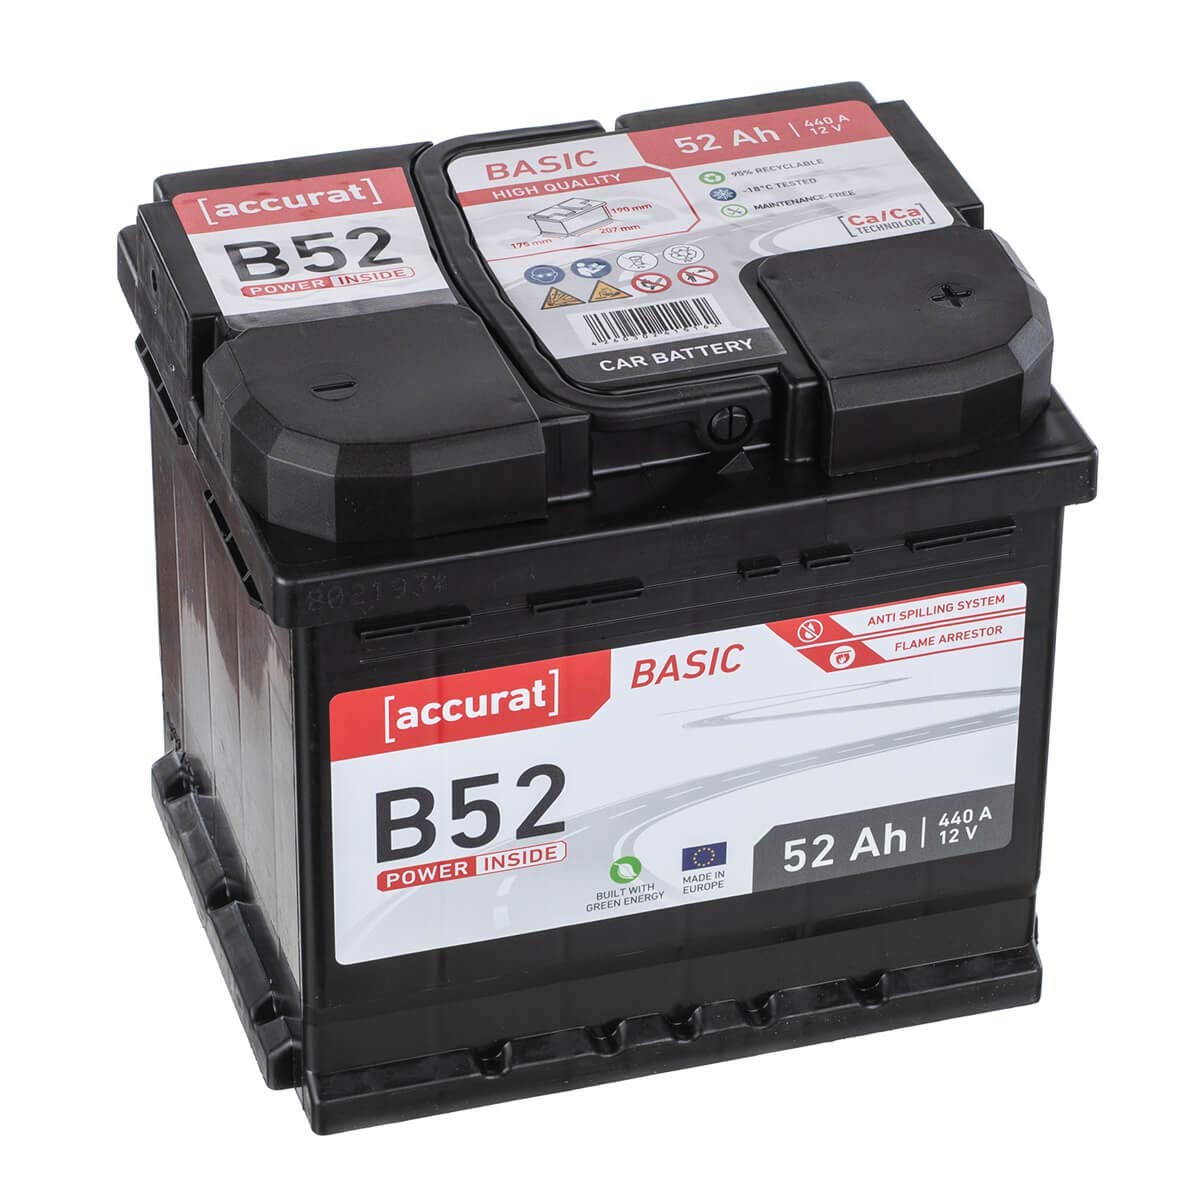 Accurat Basic B52 Autobatterie - 12V, 52Ah, 460A, zyklenfest, wartungsfrei, 30% mehr Startleistung, Ca-Technologie, Pluspol rechts- Starterbatterie, Nassbatterie, Blei-Säure Batterie von Accurat